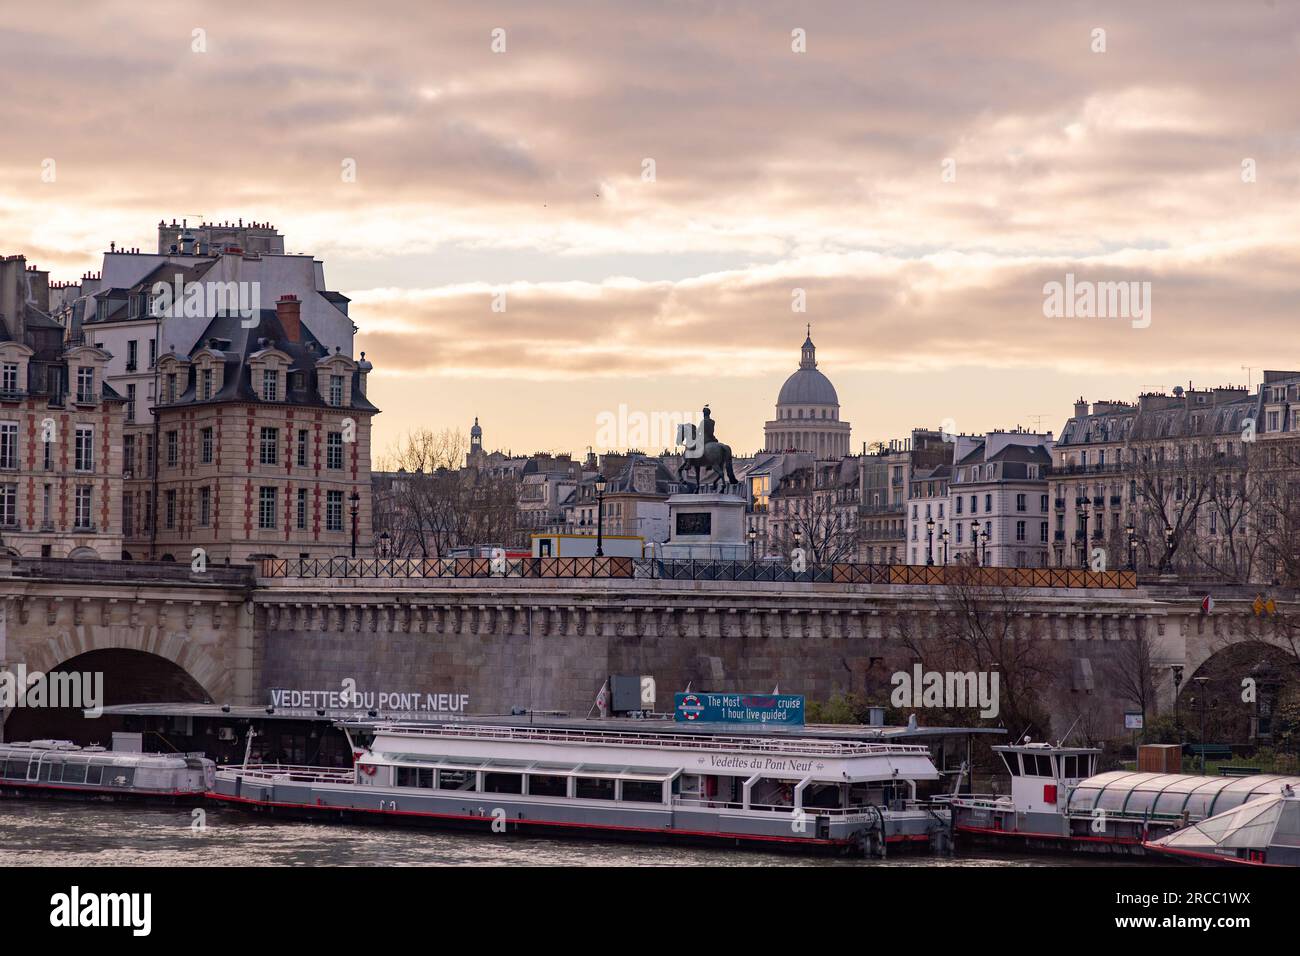 París, Francia - 20 de enero de 2022: Edificios y arquitectura típica francesa alrededor del río Sena en París, la capital francesa Foto de stock